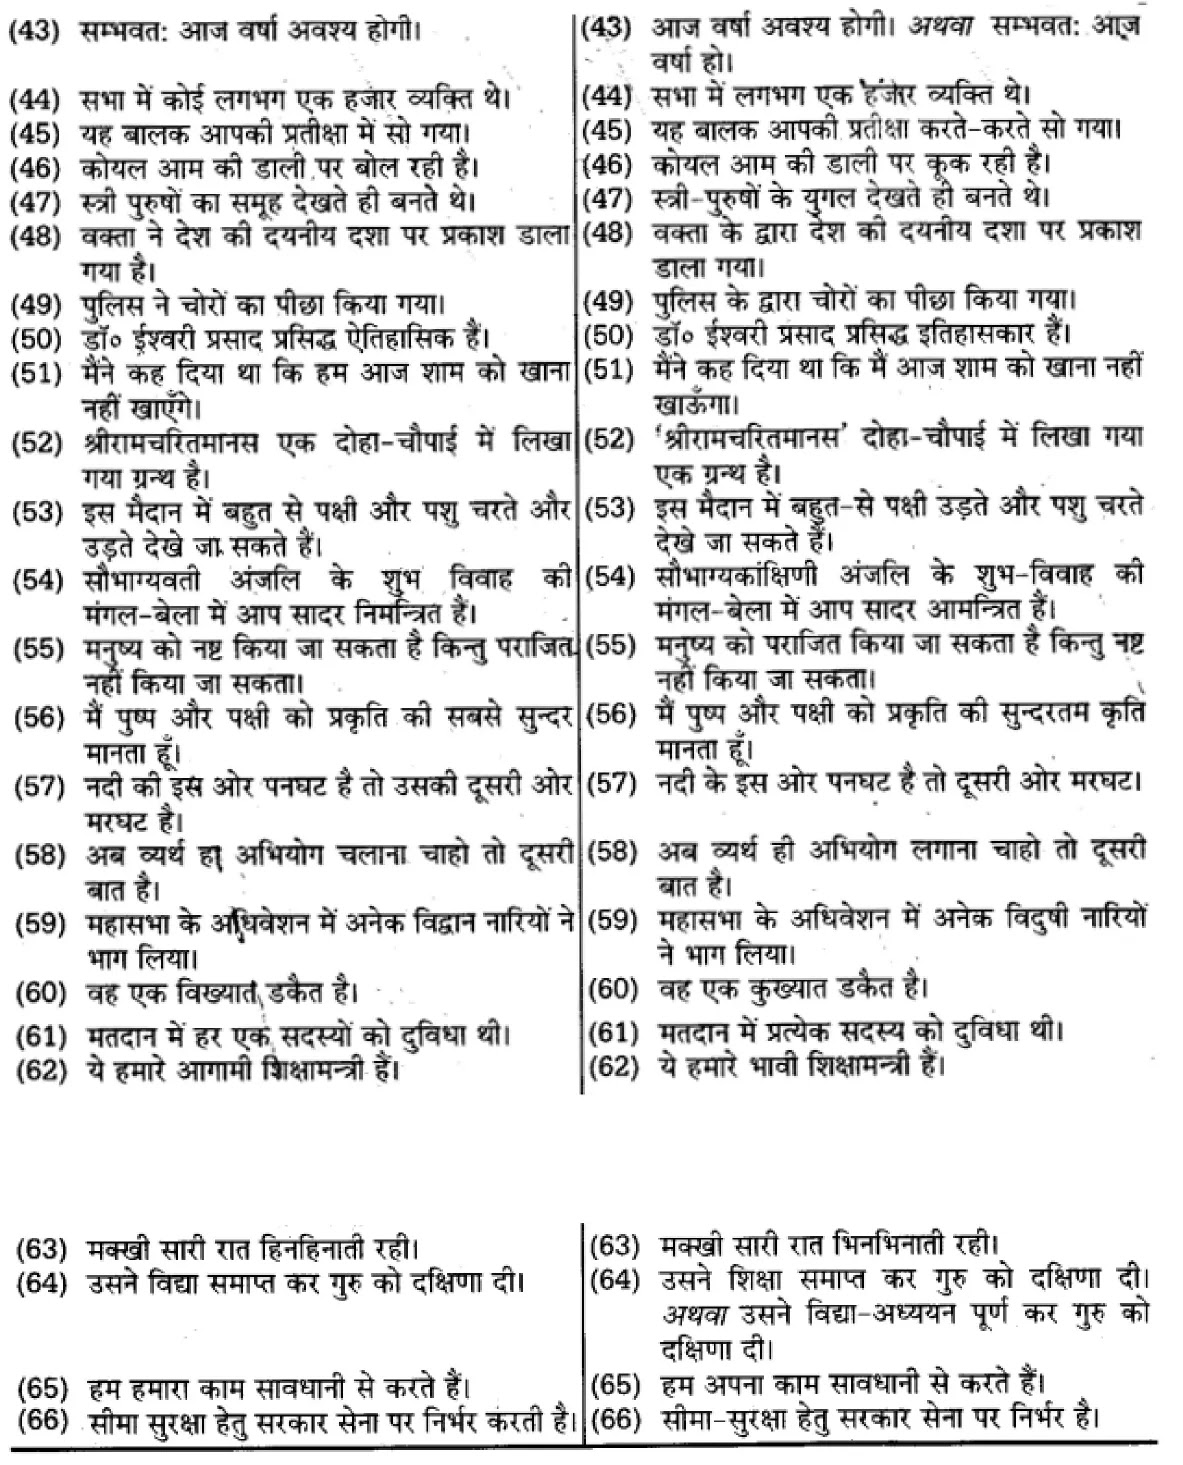 यूपी बोर्ड एनसीईआरटी समाधान "कक्षा 11 सामान्य  हिंदी" वाक्यों में त्रुटि-मार्जन  हिंदी में